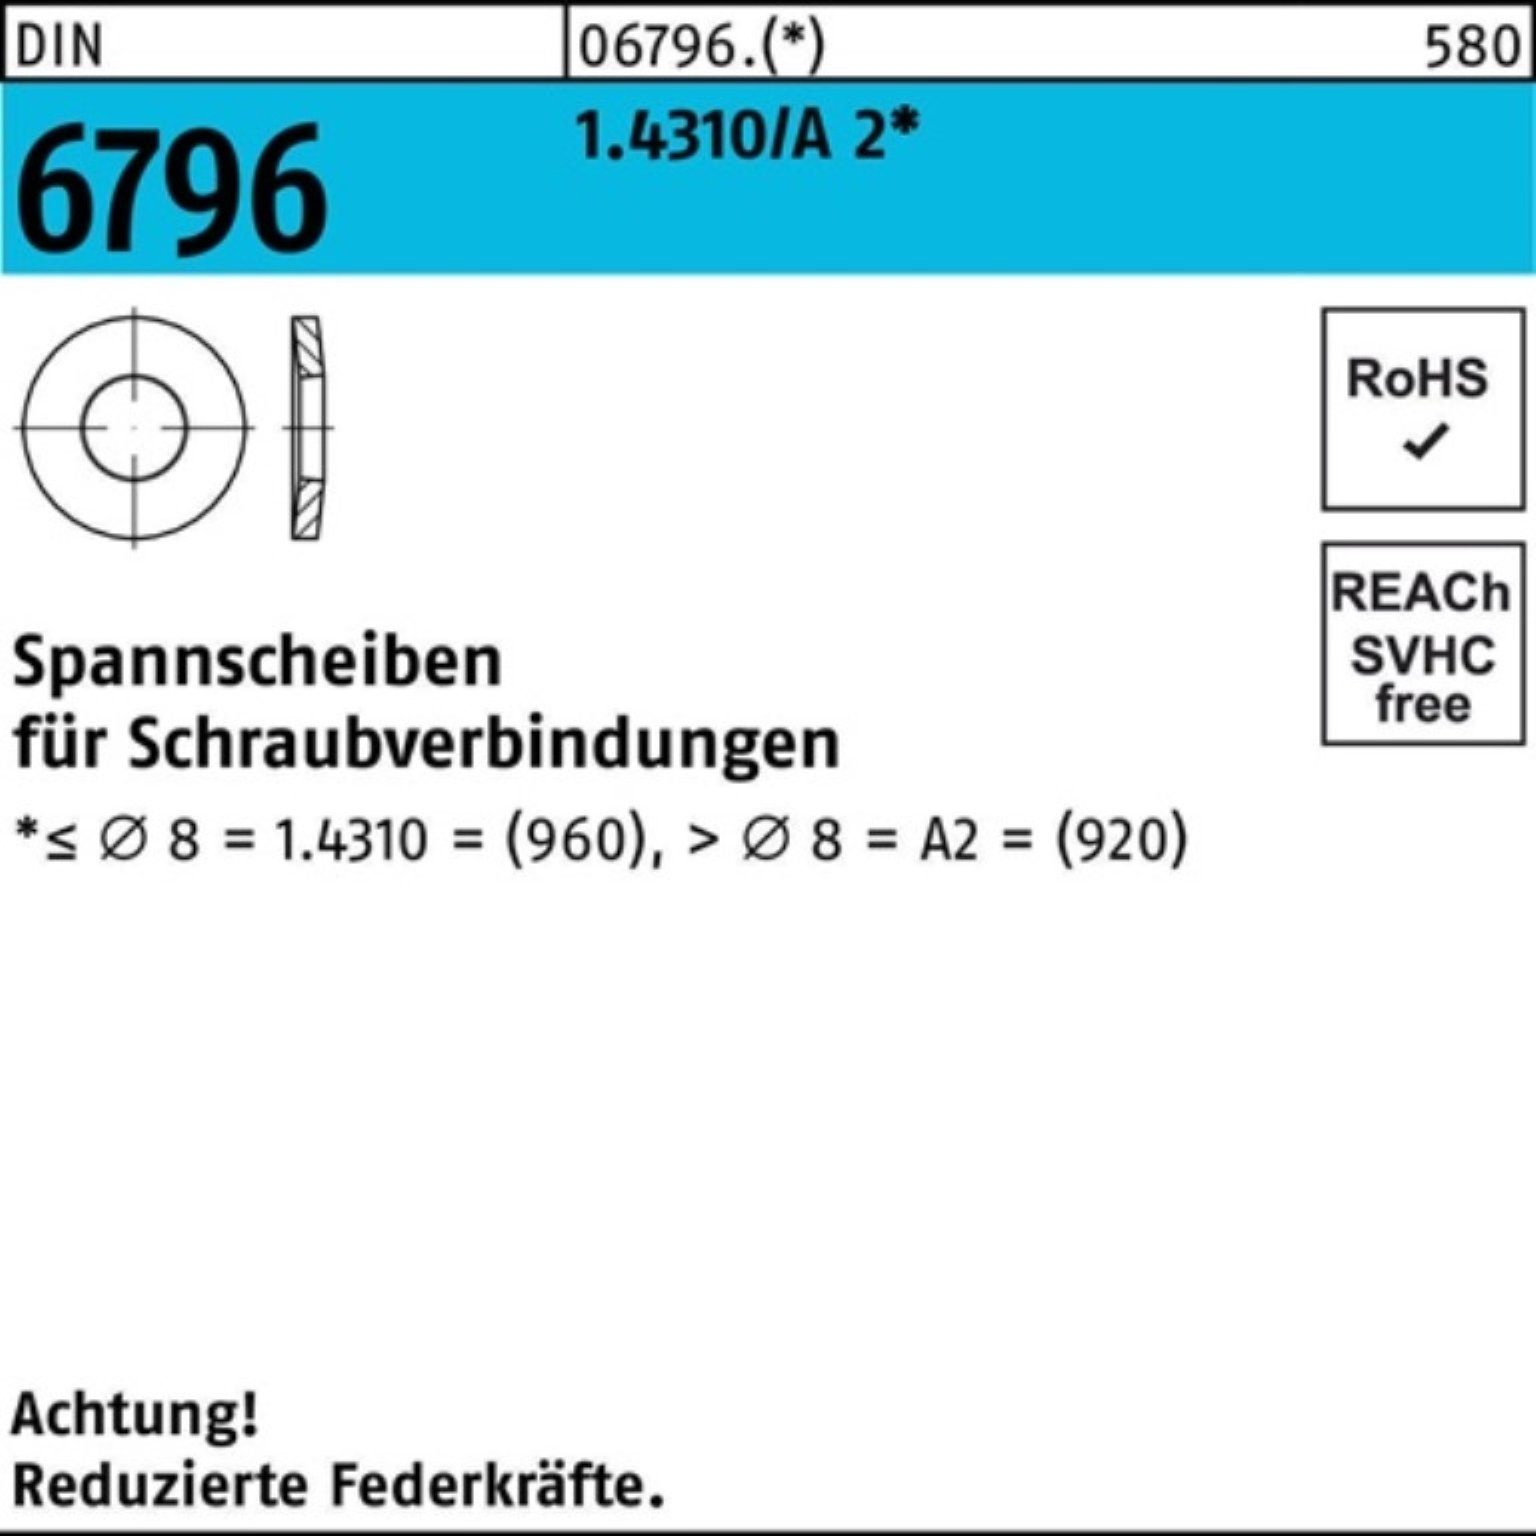 Reyher Spannscheibe 1000er Pack Spannscheibe DIN 6796 5x 11x 1,2 1.4310/A 2 1000 Stück DI